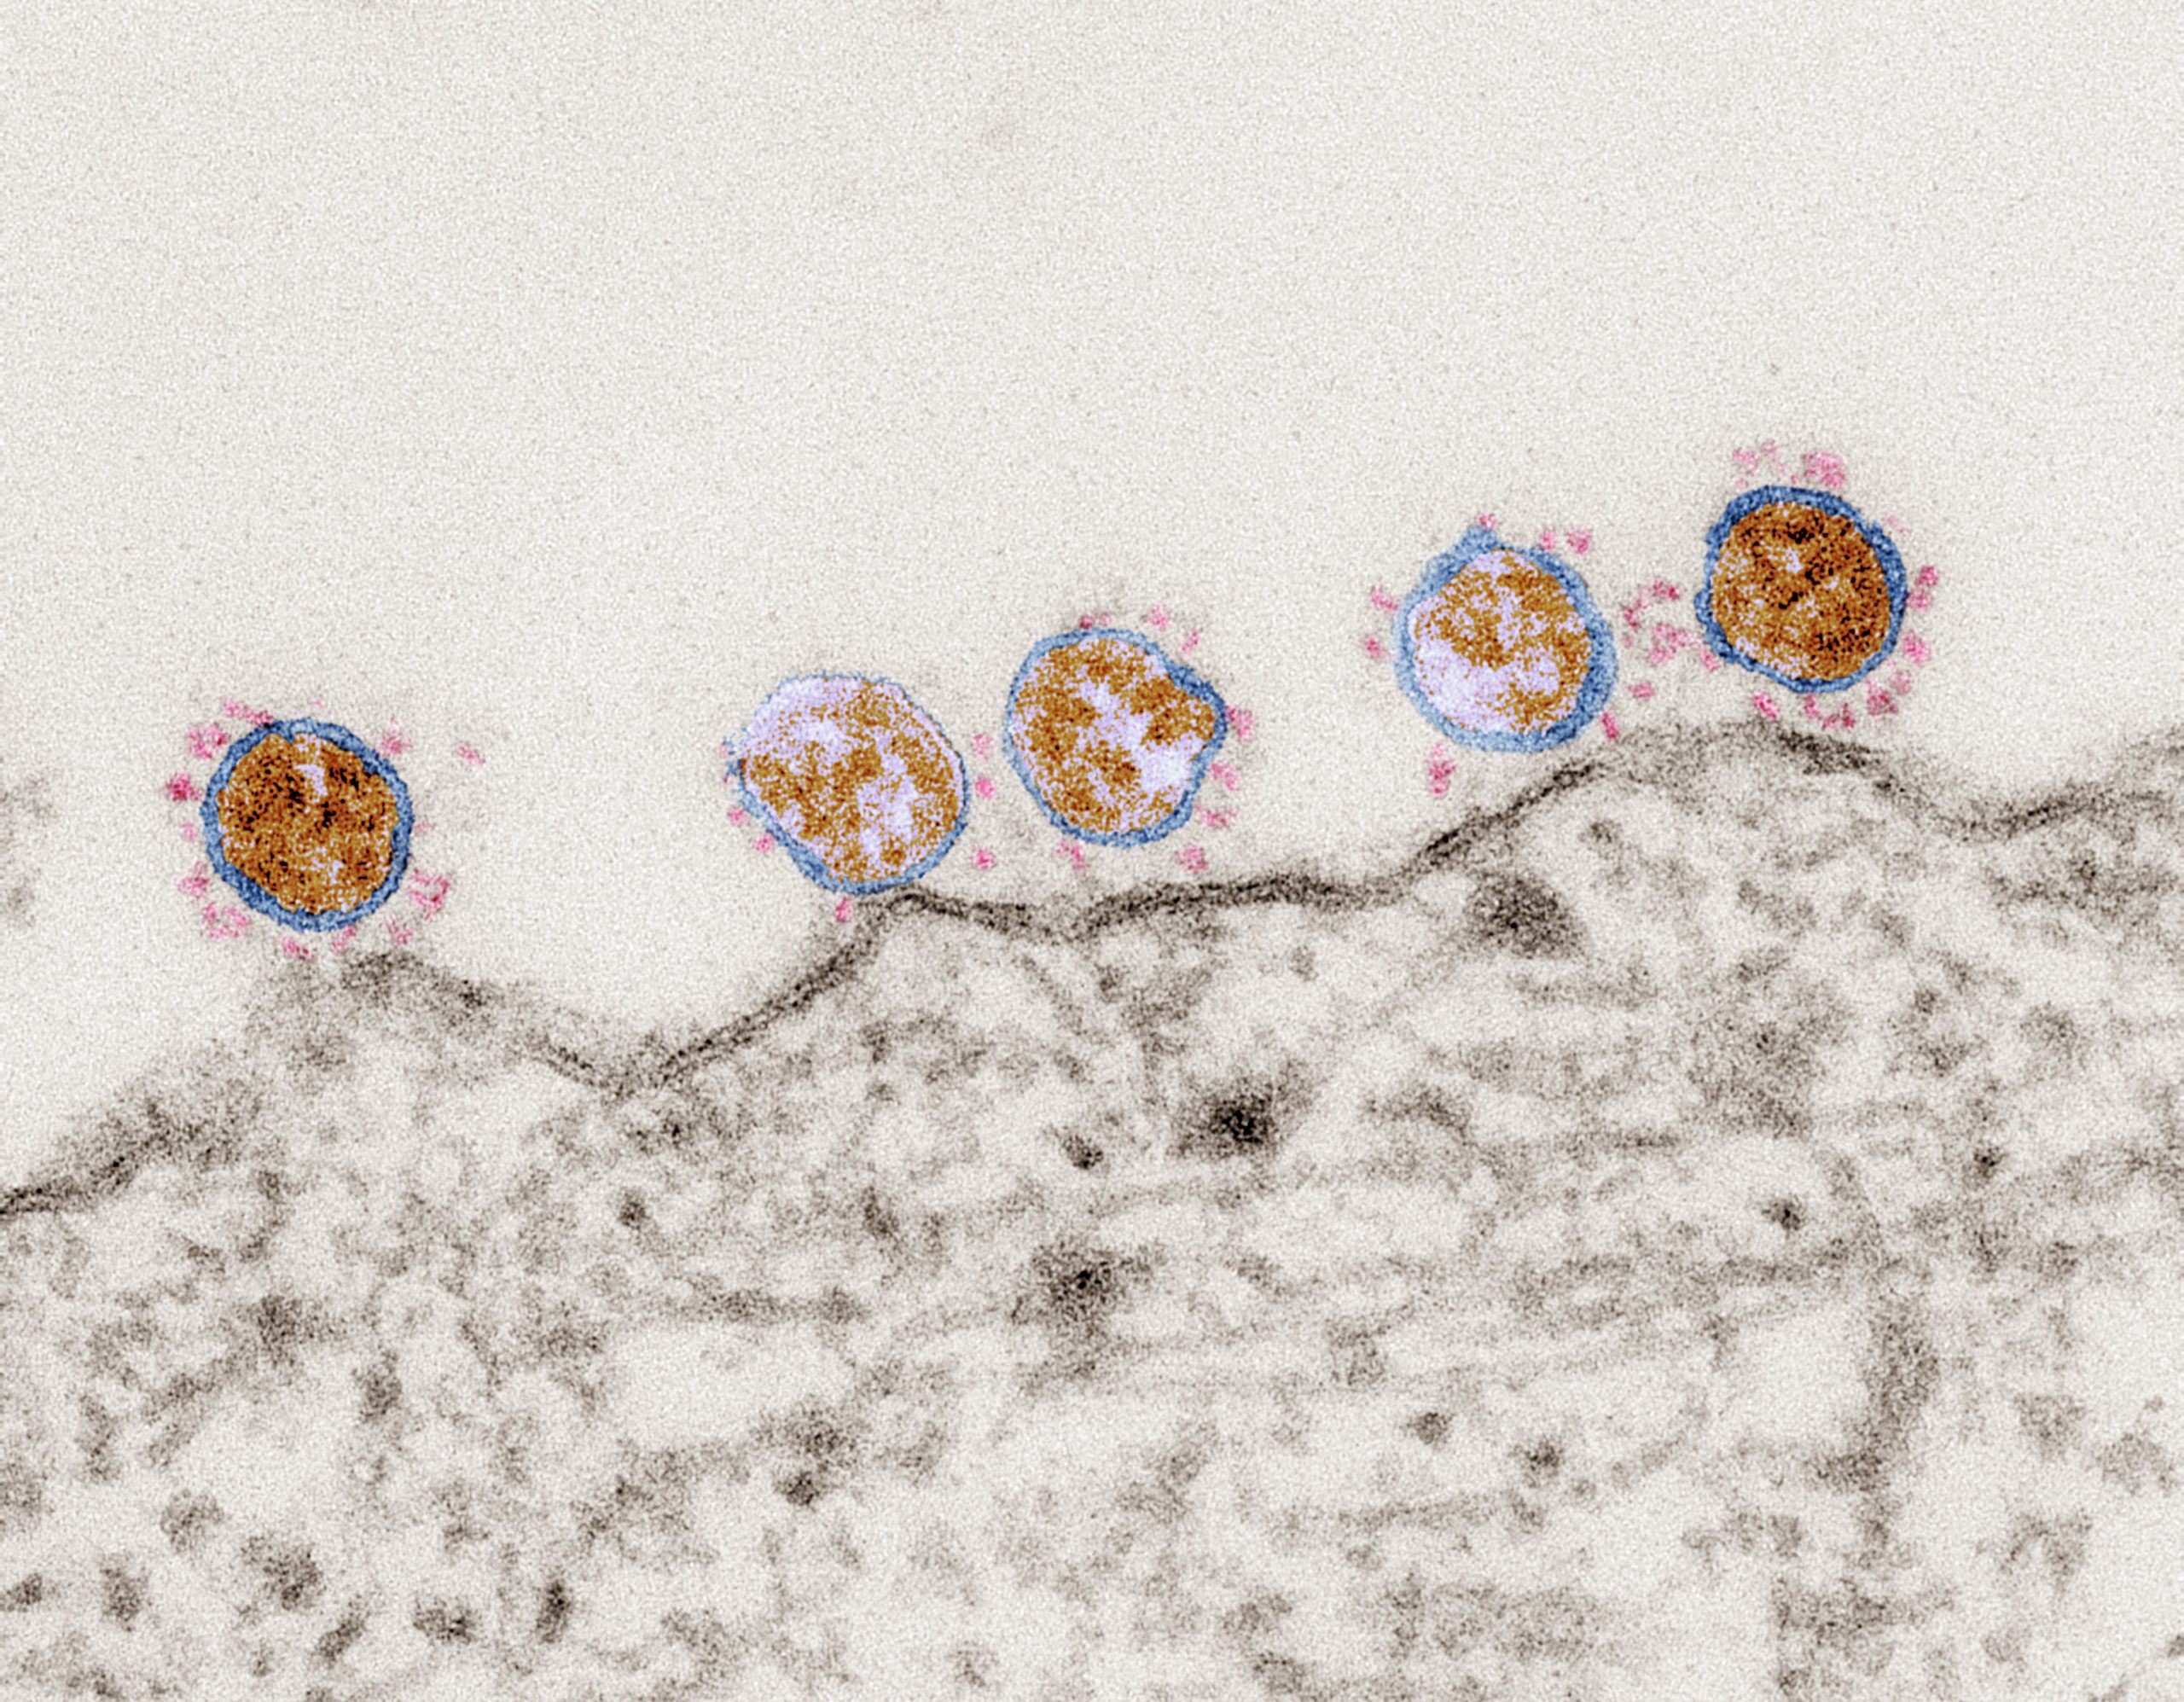 SARS-Coronavirus-2 (SARS-CoV-2, Isolat SARS-CoV-2/Italy-INMI1). Elektronenmikroskopie. Ultradünnschnitt durch eine Verozelle mit Viruspartikeln auf der Oberfläche. Maßstab: 100 nm. Quelle: Tobias Hoffmann, Robert Koch-Institut (RKI), 2020.